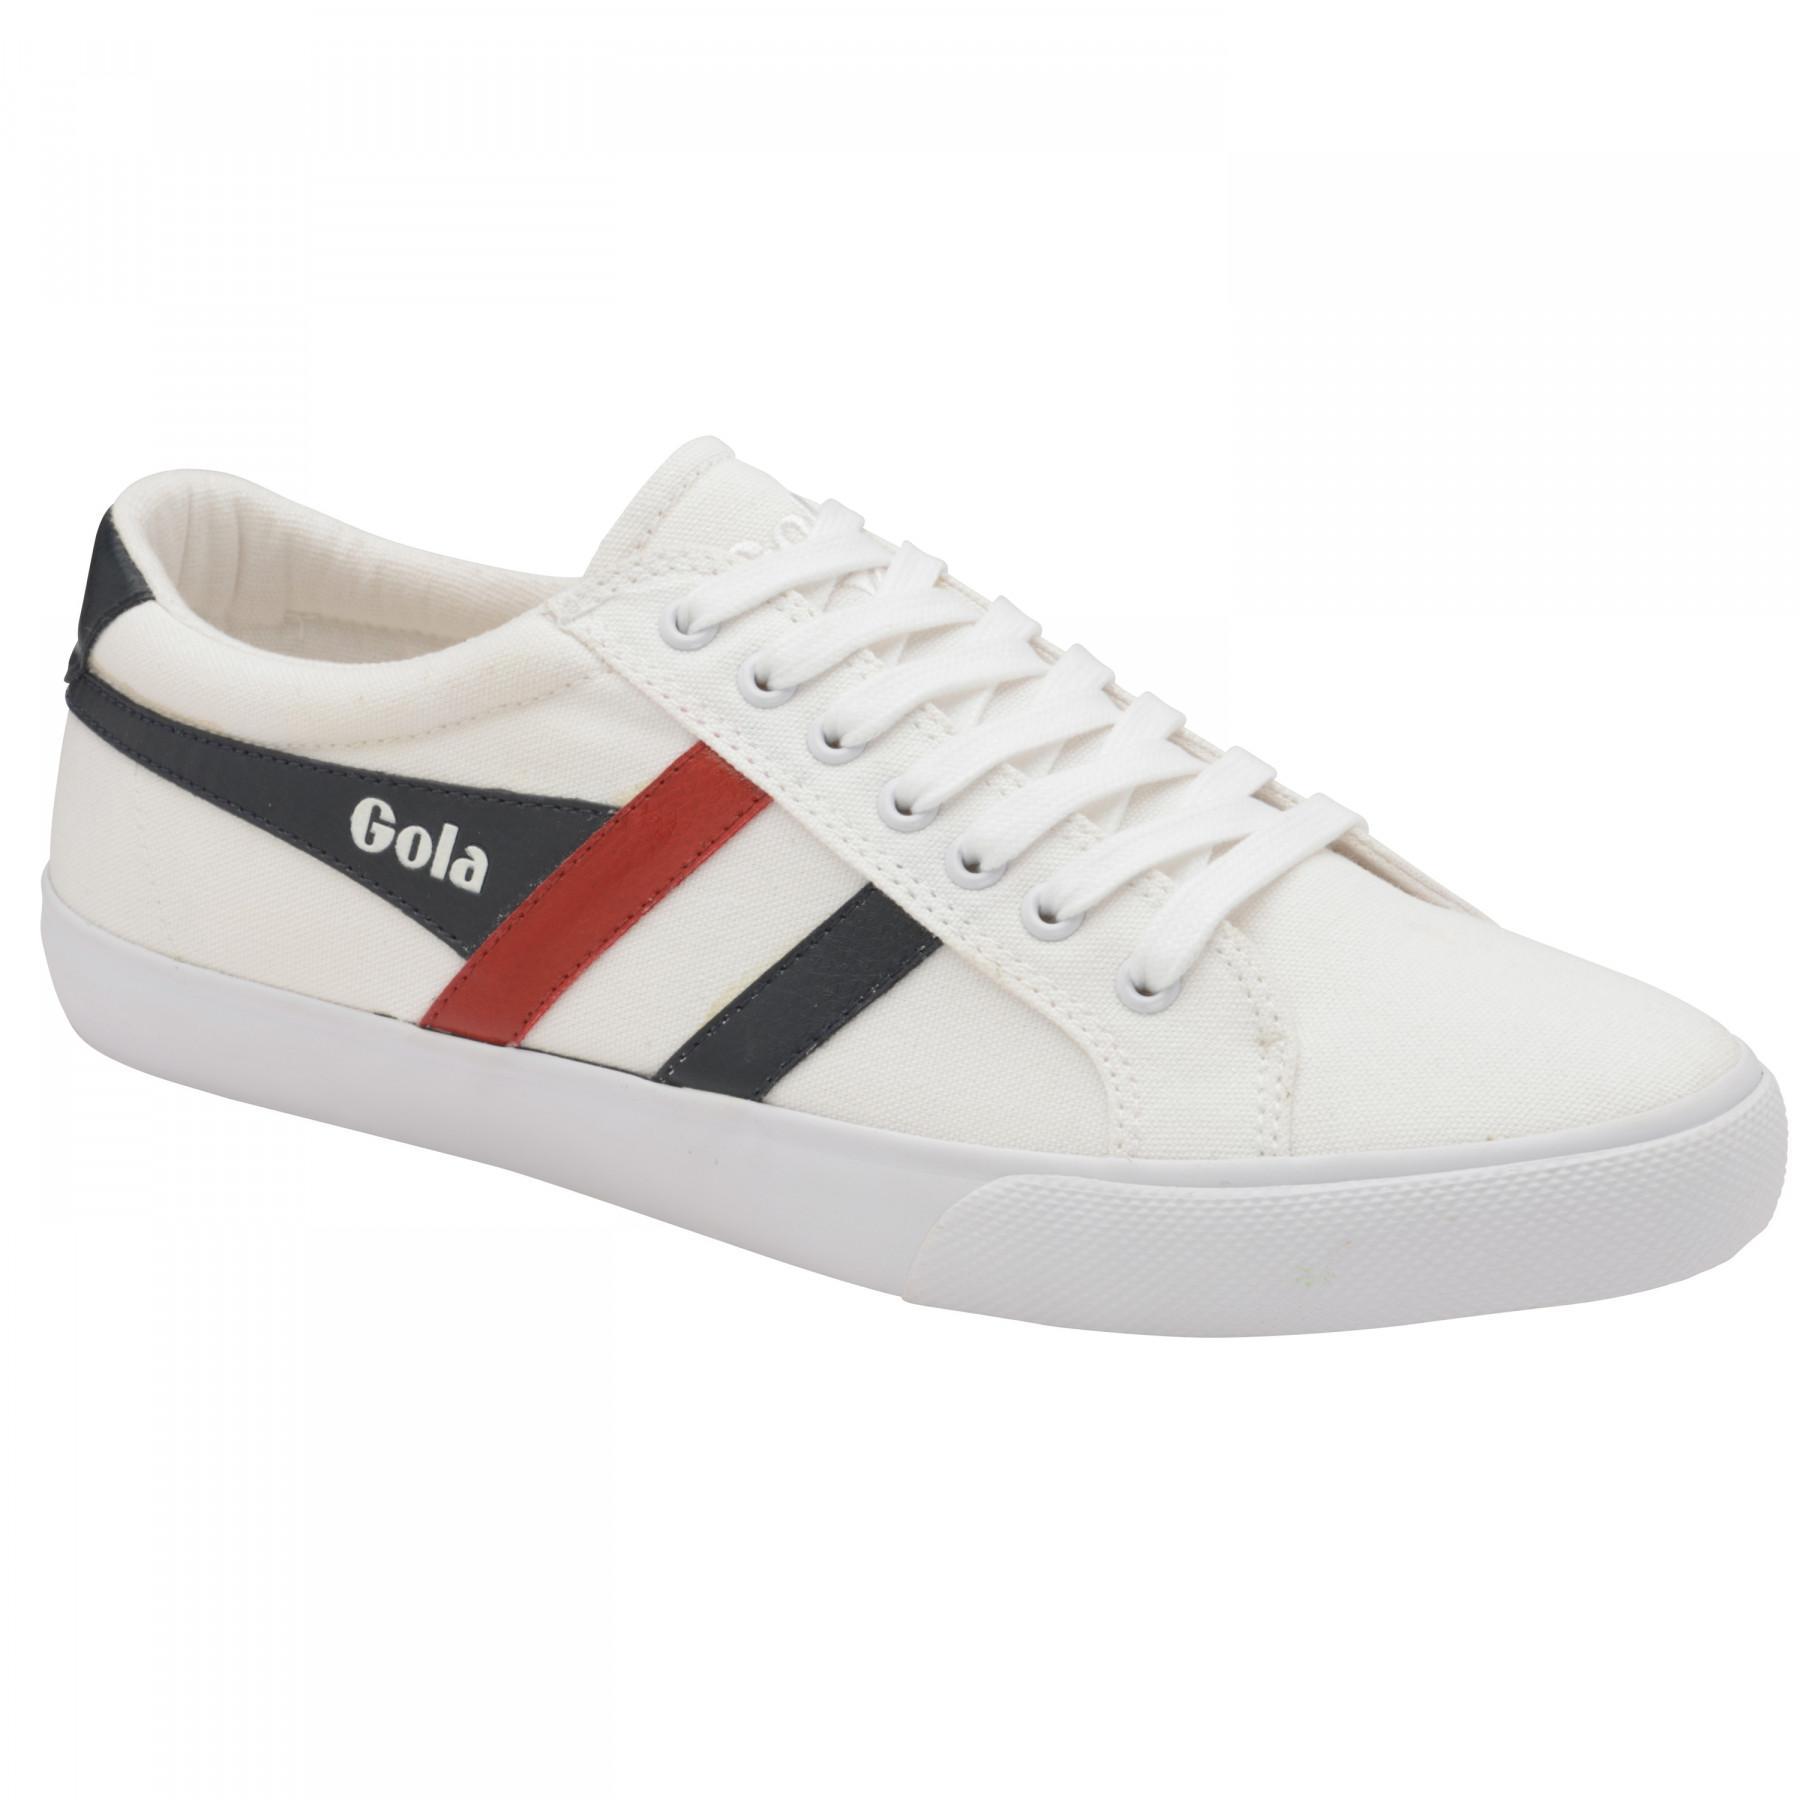 Sneaker Gola Varsity white navy red